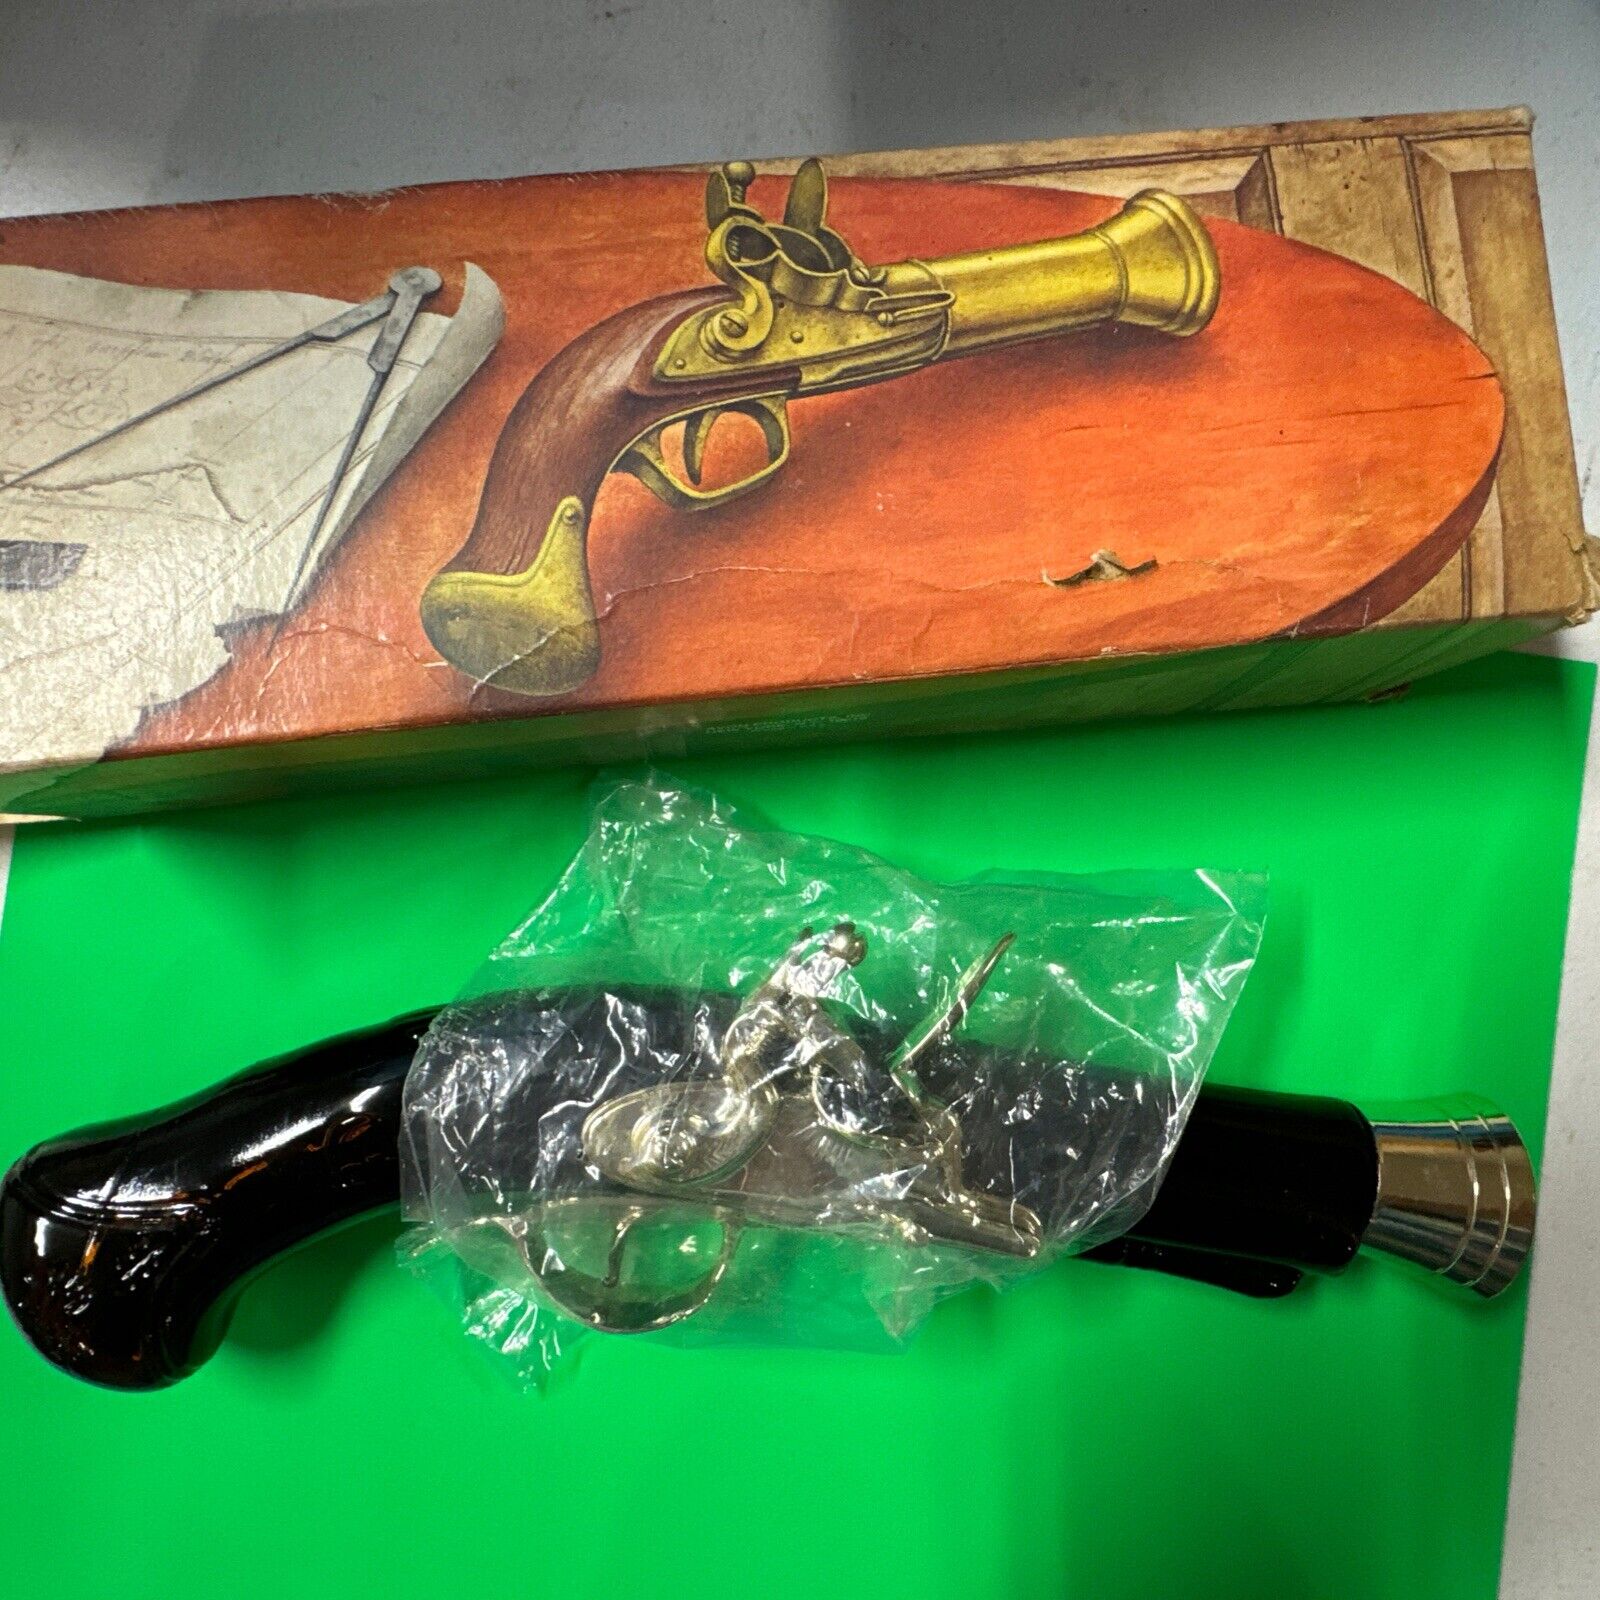 NIB Vintage Avon Dueling Pistol Shotgun After Shave Cologne Gun Decanter